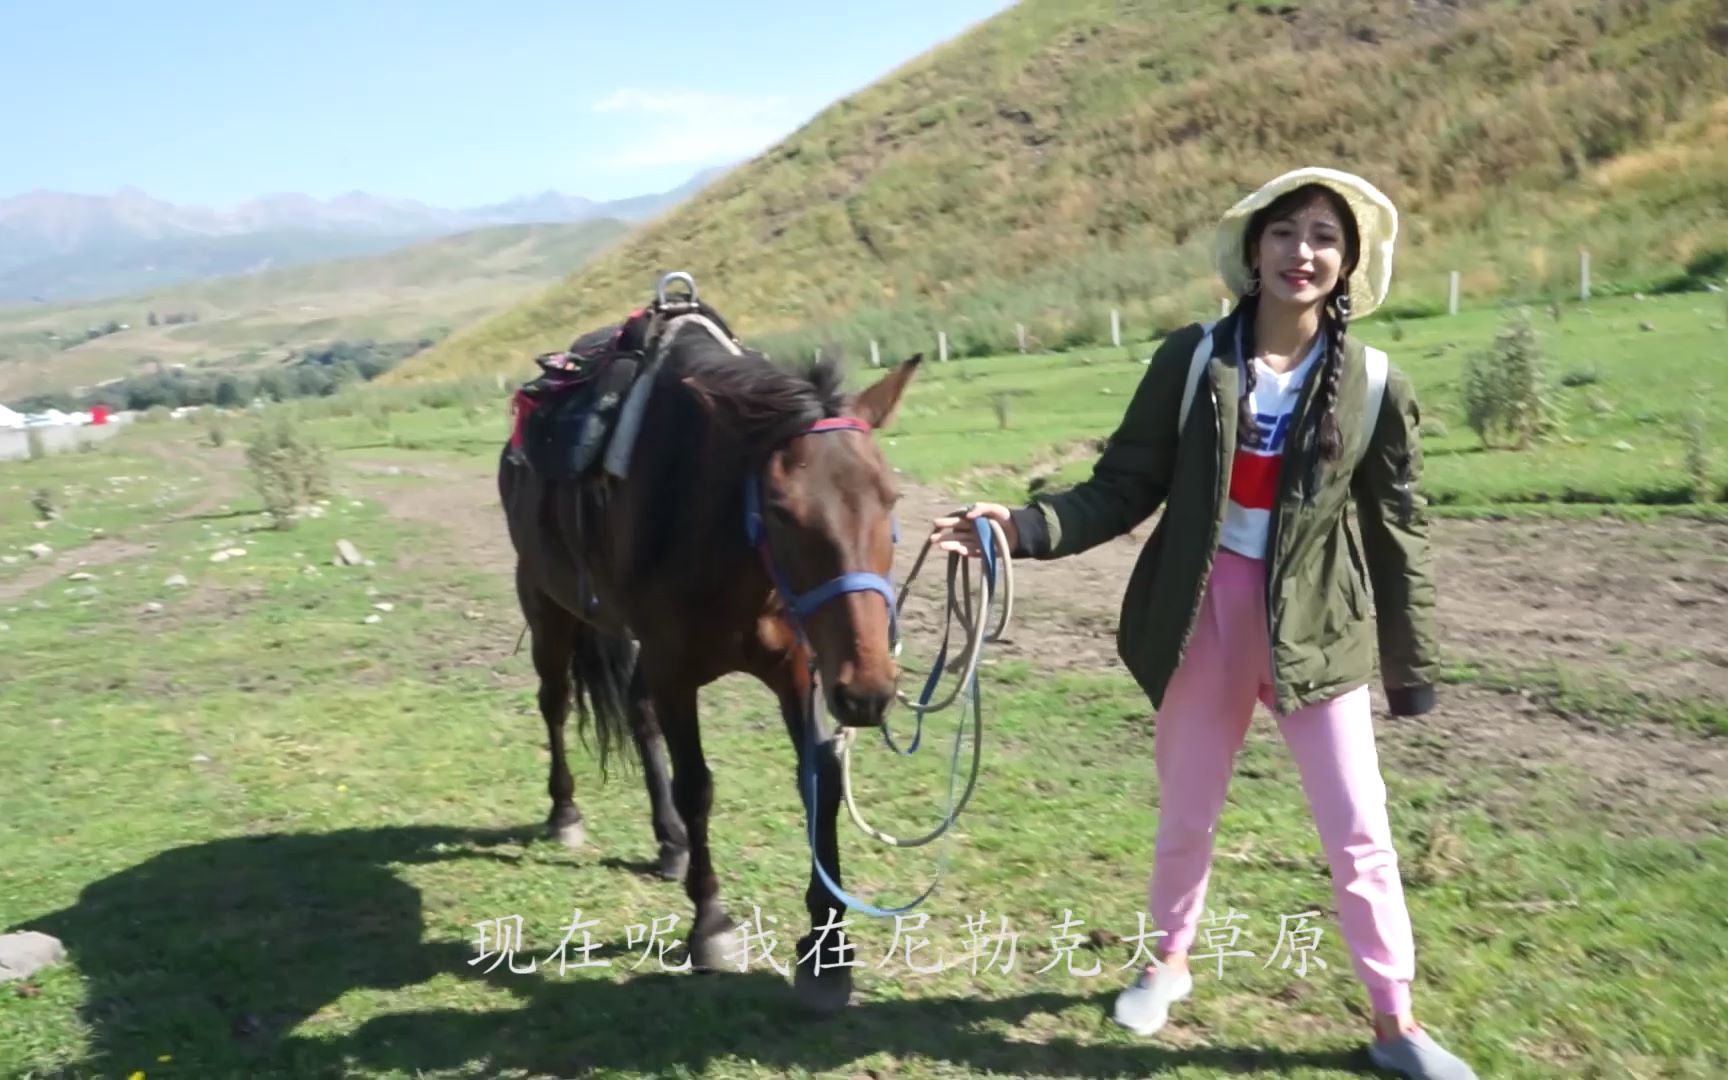 安妮古丽:新疆美女挑战骑马走草原,这骑马技术,马儿都尴尬到走不动了!